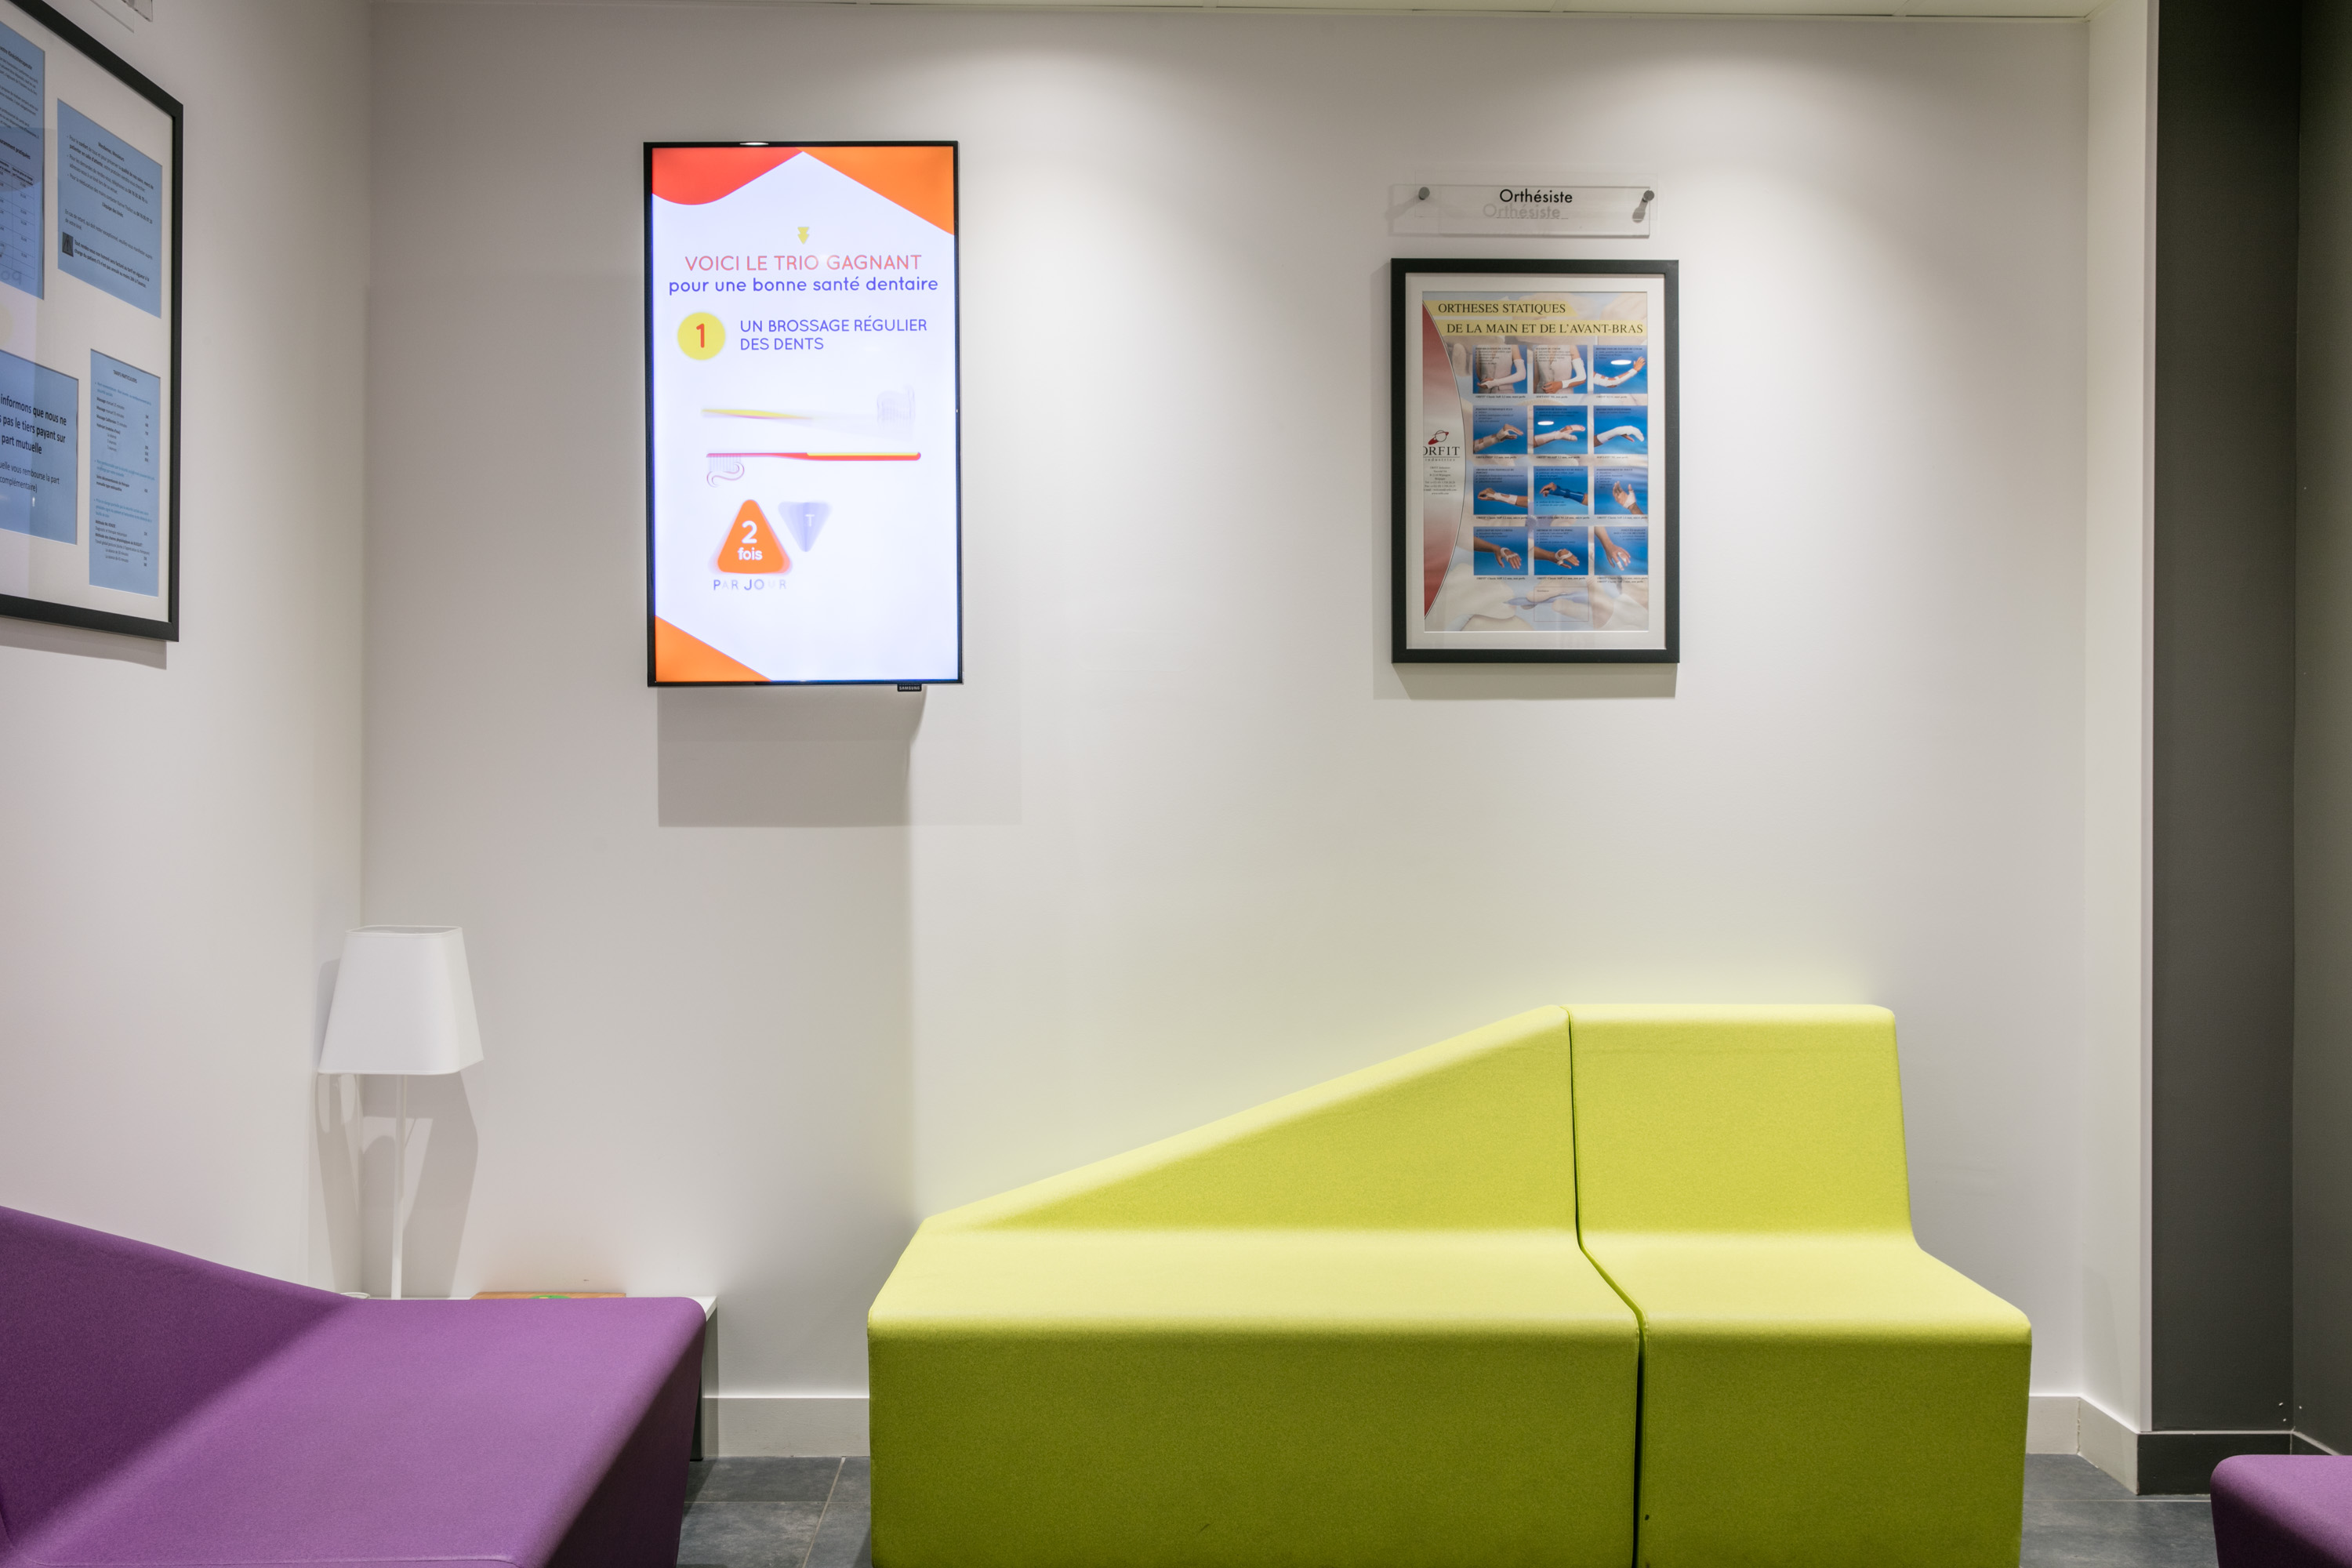 Installer des écrans en salle d’attente de cabinet médical : les étapes clefs